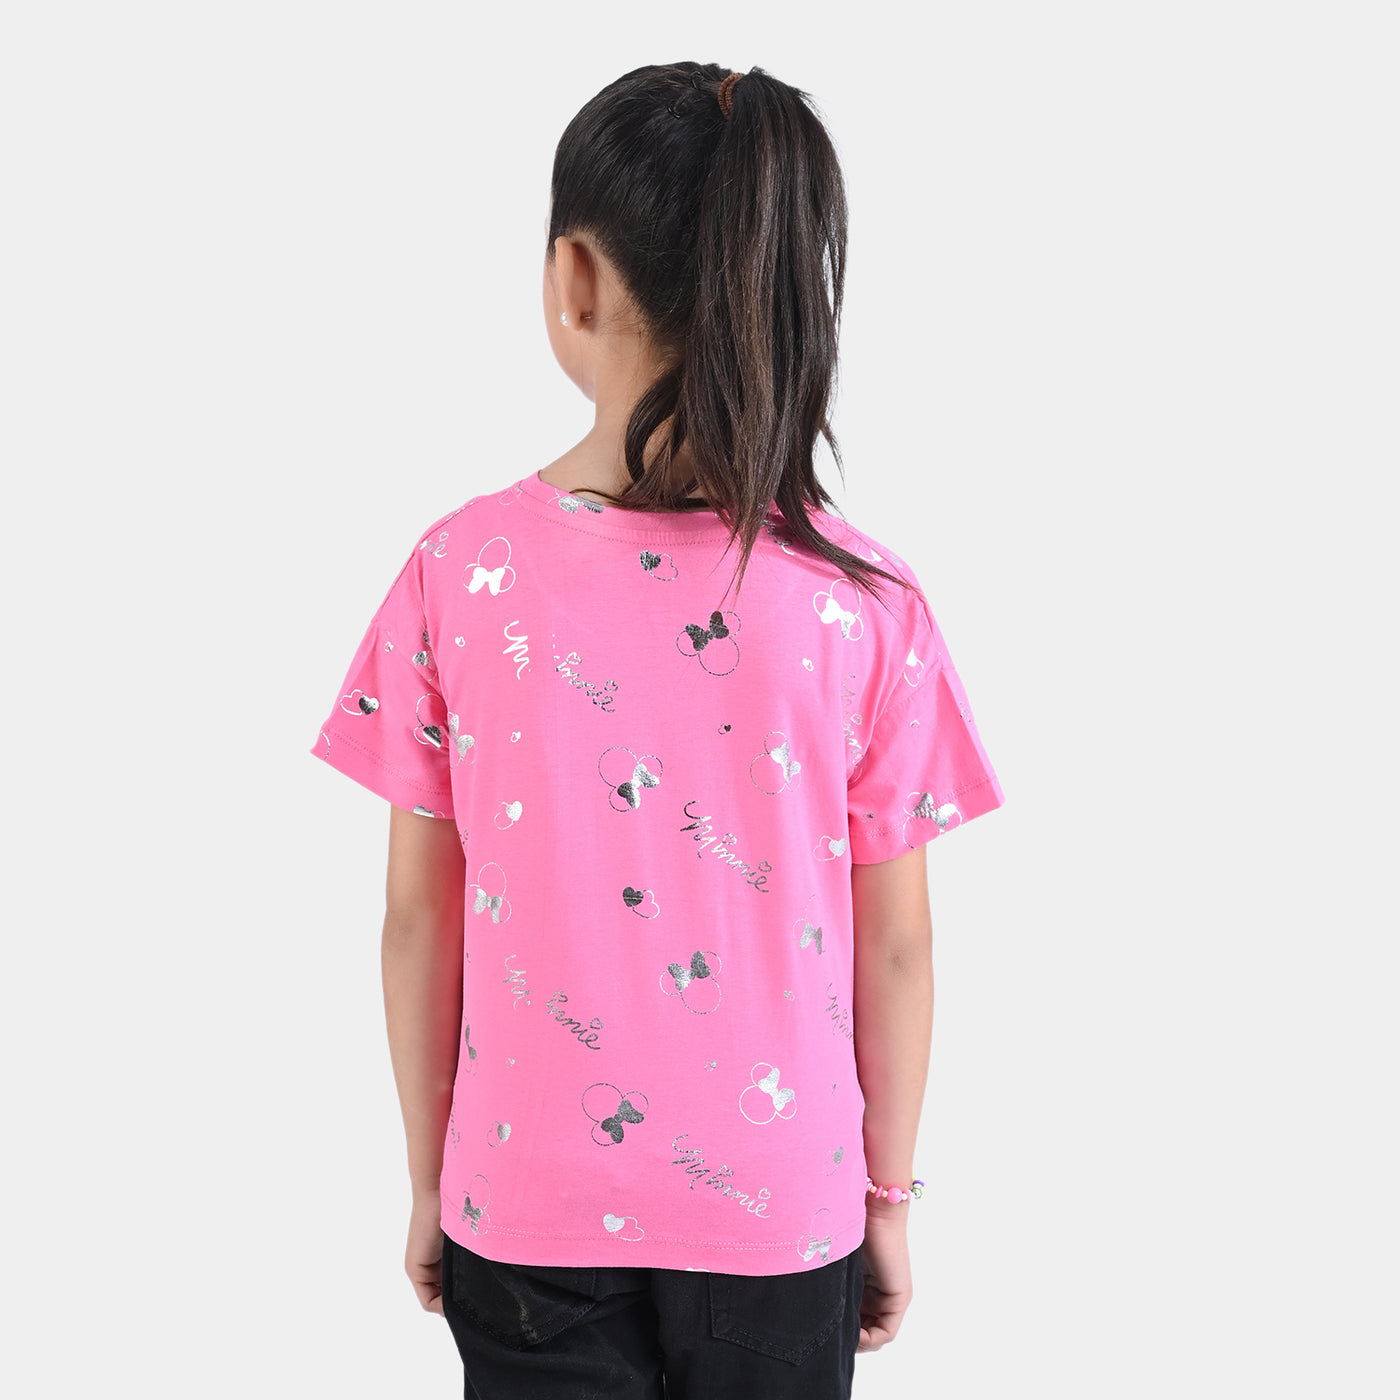 Girls Cotton Jersey T-Shirt H/S-Pink